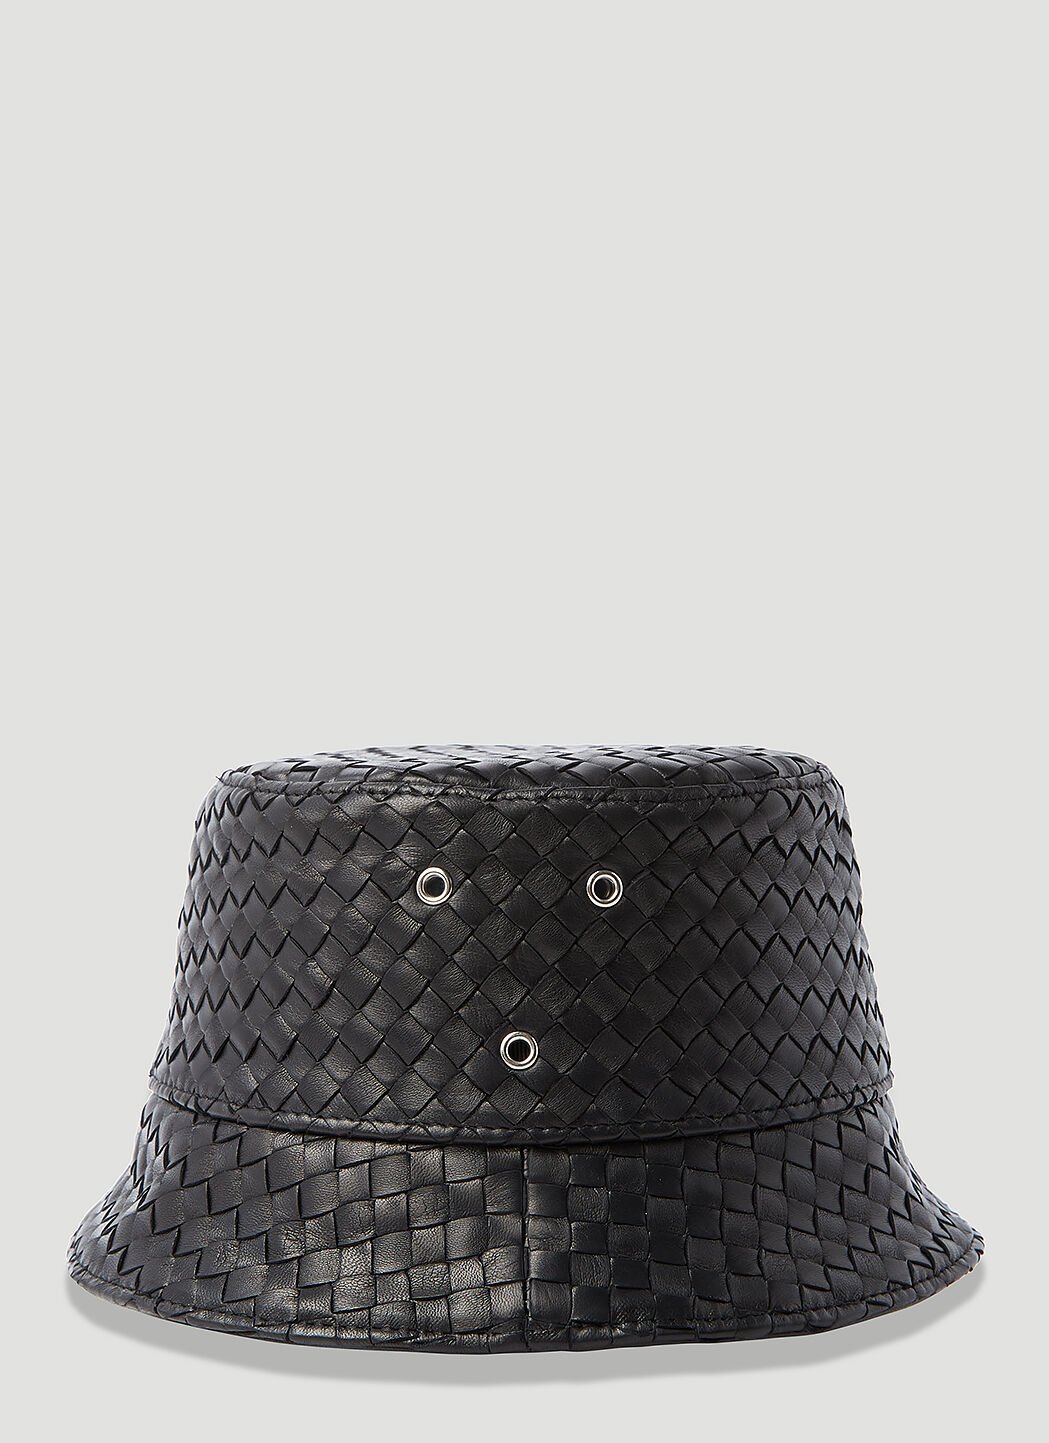 Gucci Intrecciato Leather Bucket Hat Black guc0255176